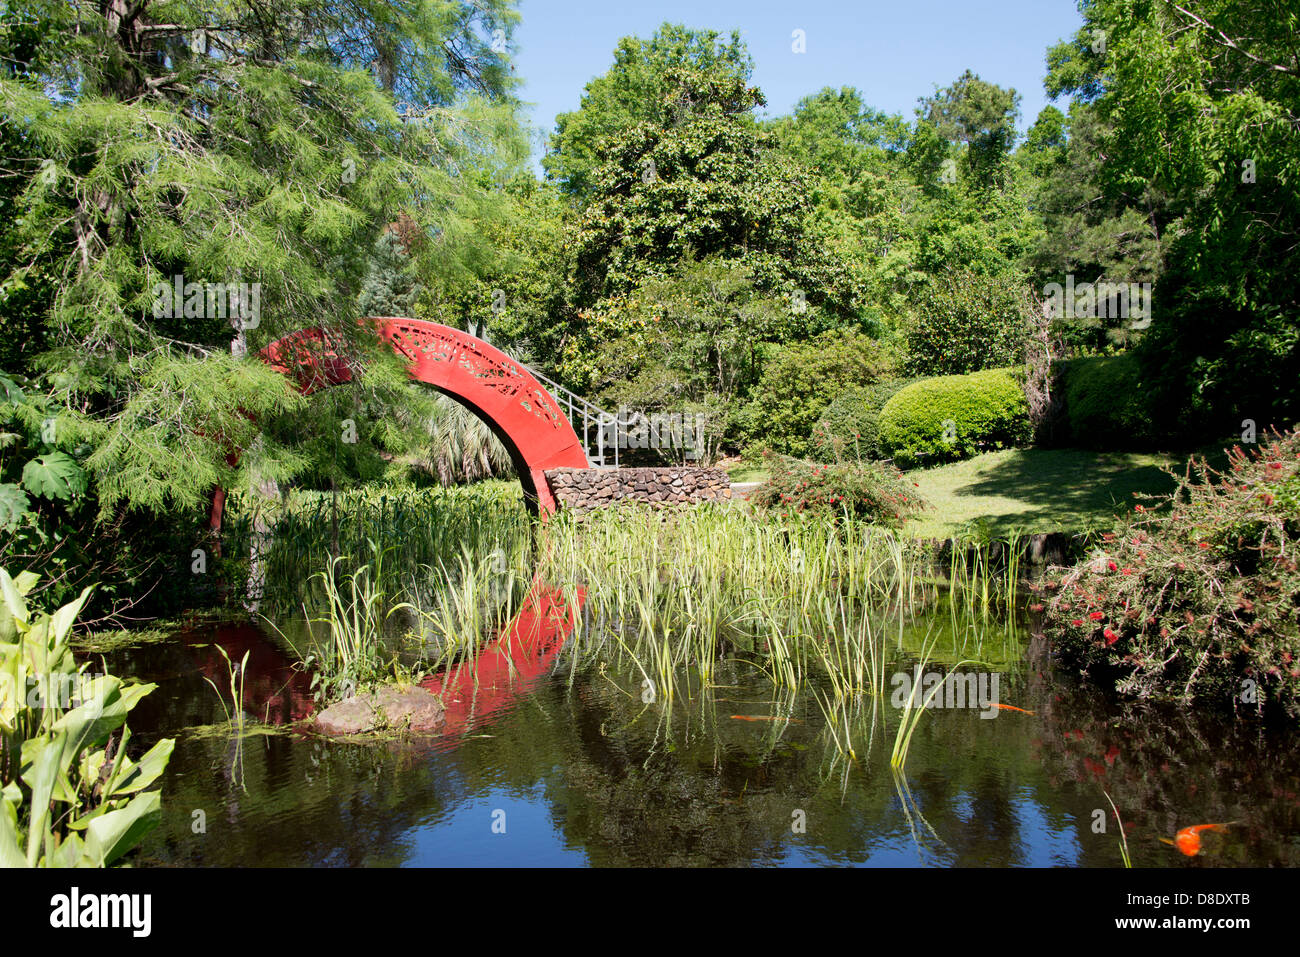 In Alabama, Theodore vicino Mobile. Storica i Bellingrath Gardens e Home, Asiatico-Americano di giardino. Rosso ponte asiatici e koi pond. Foto Stock